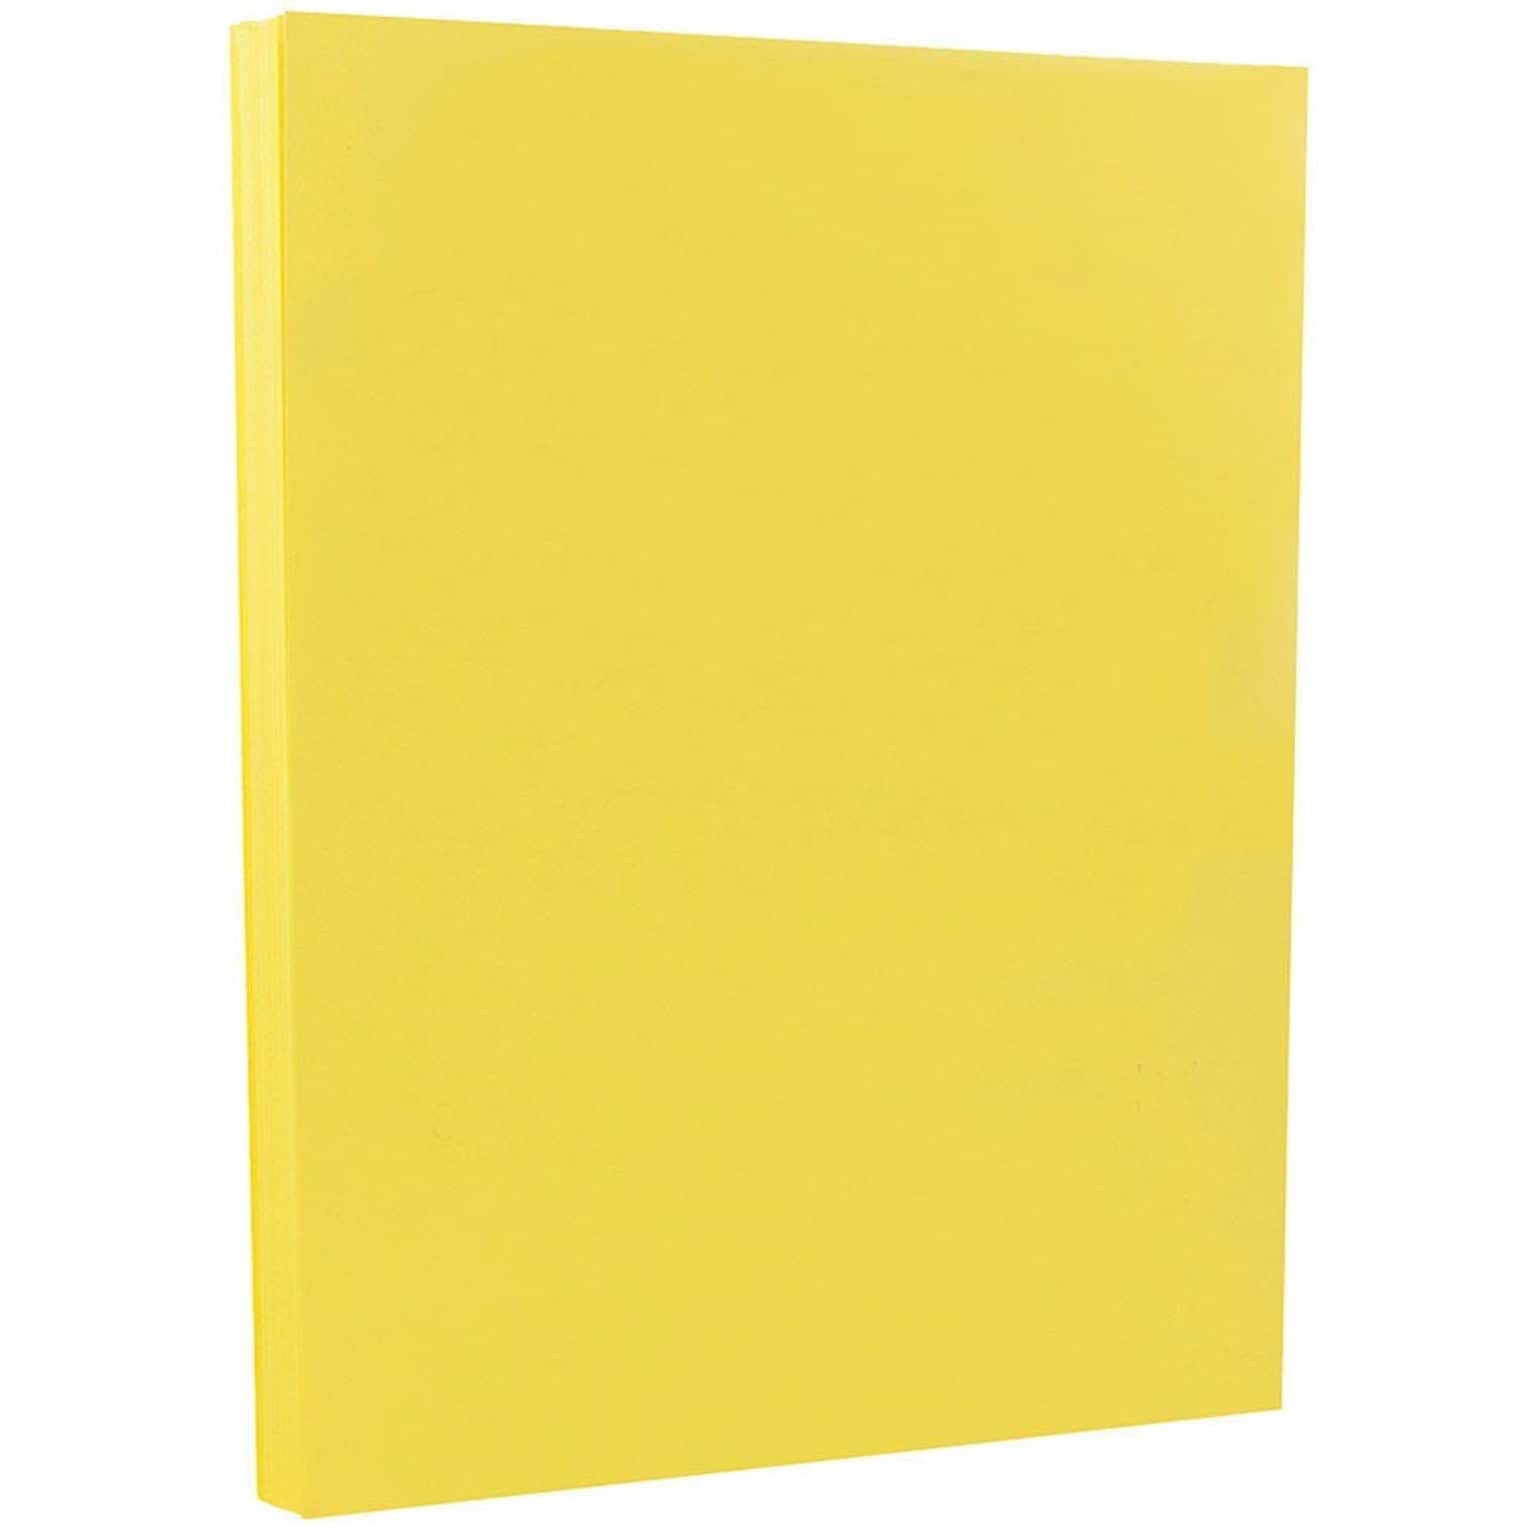 JAM PAPER 8.5 x 11 Vellum Bristol Cardstock, 67lb, Yellow, 100/pack  (169838G)